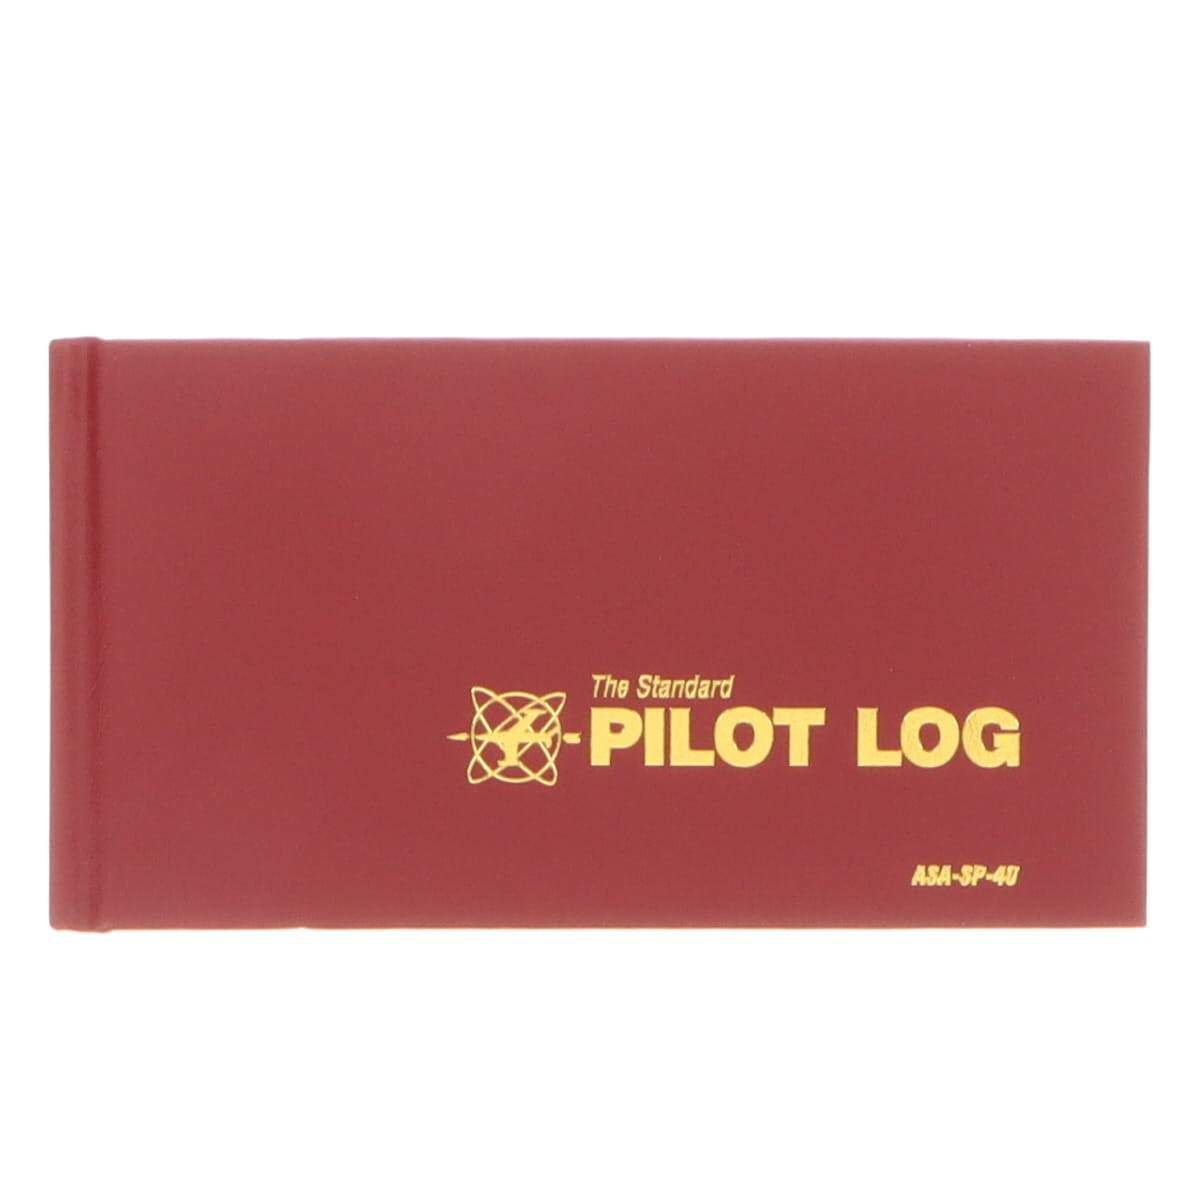 ASA Standard Pilot Logbook (Burgundy) - PilotMall.com